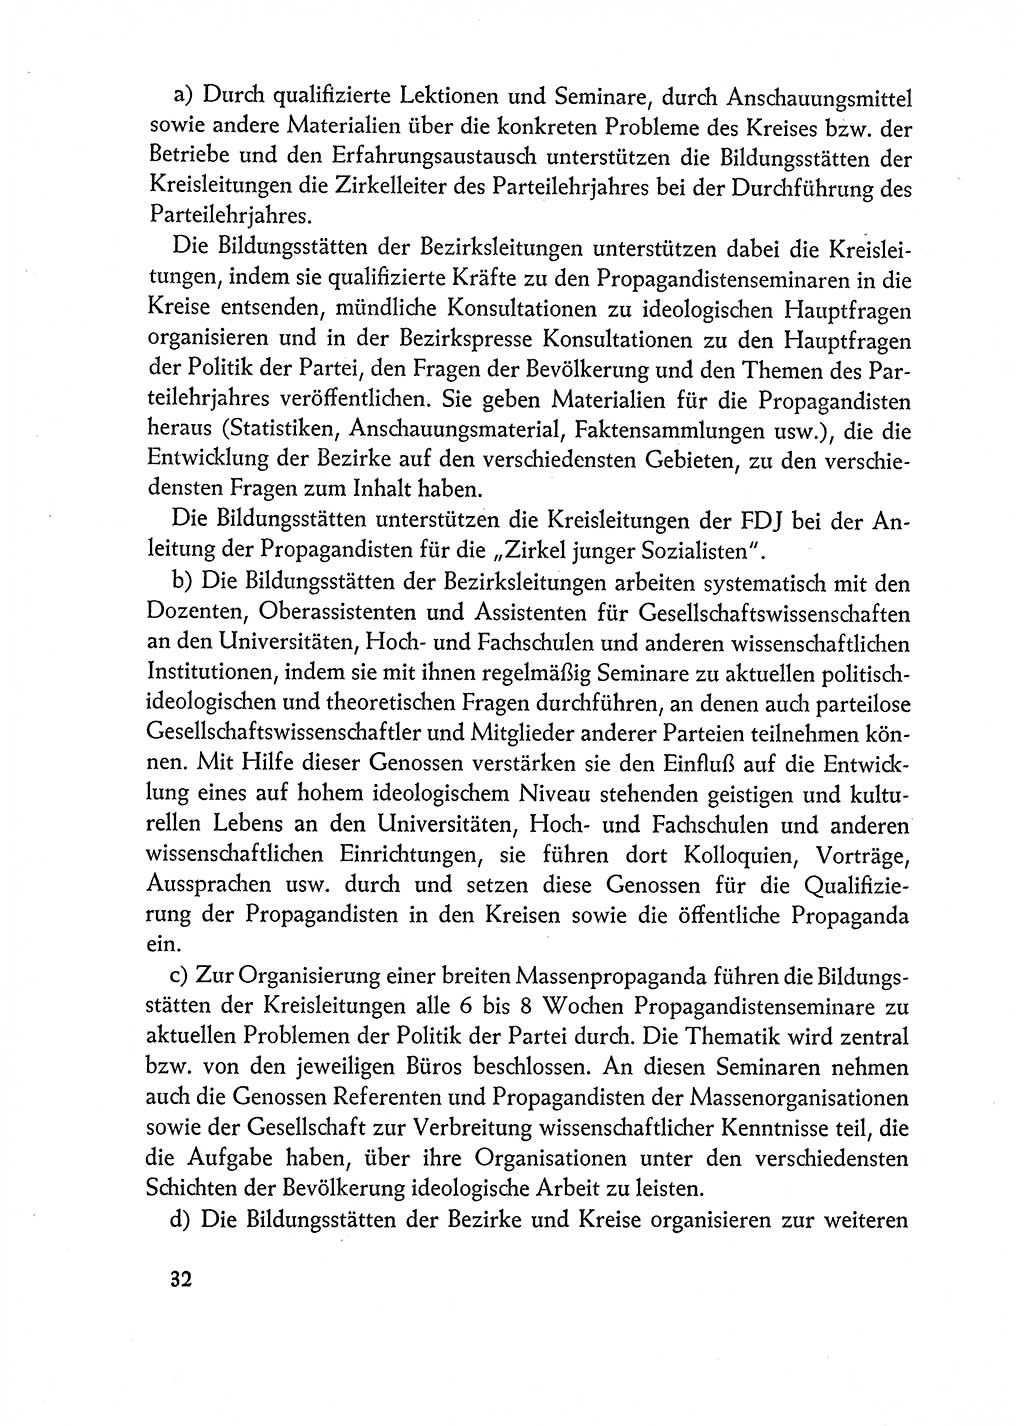 Dokumente der Sozialistischen Einheitspartei Deutschlands (SED) [Deutsche Demokratische Republik (DDR)] 1962-1963, Seite 32 (Dok. SED DDR 1962-1963, S. 32)